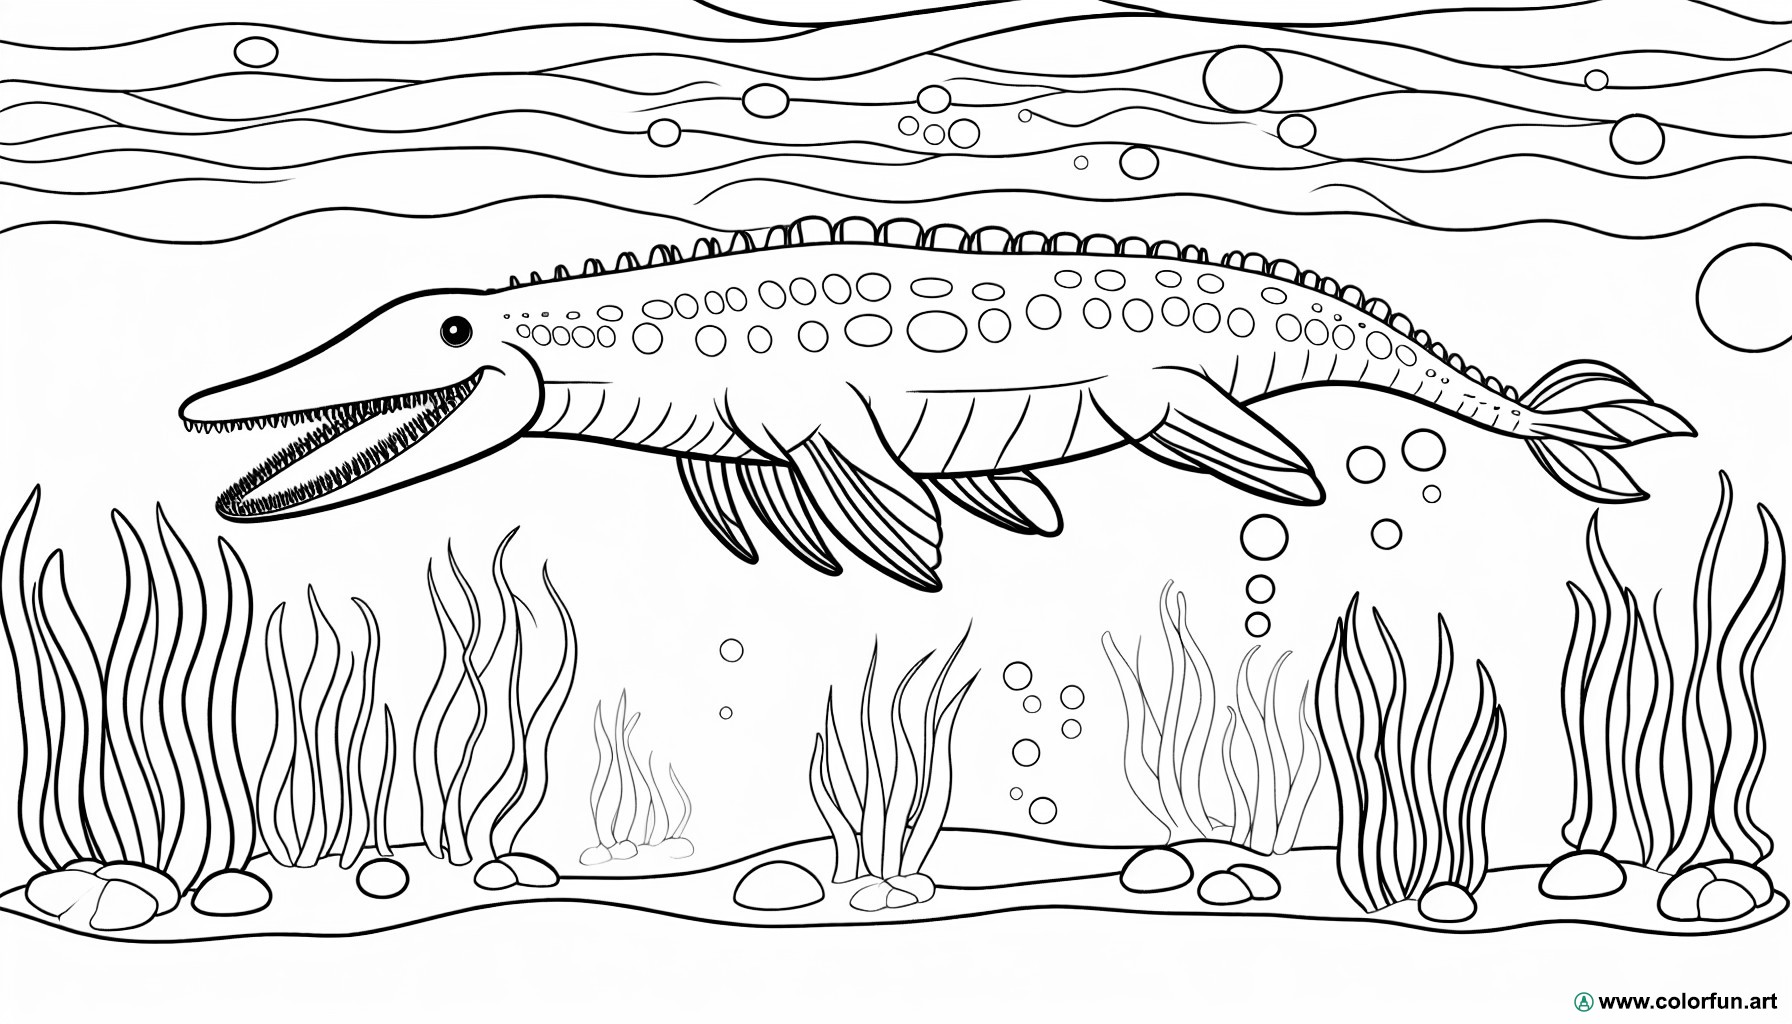 dibujo para colorear de mosasaurio marino